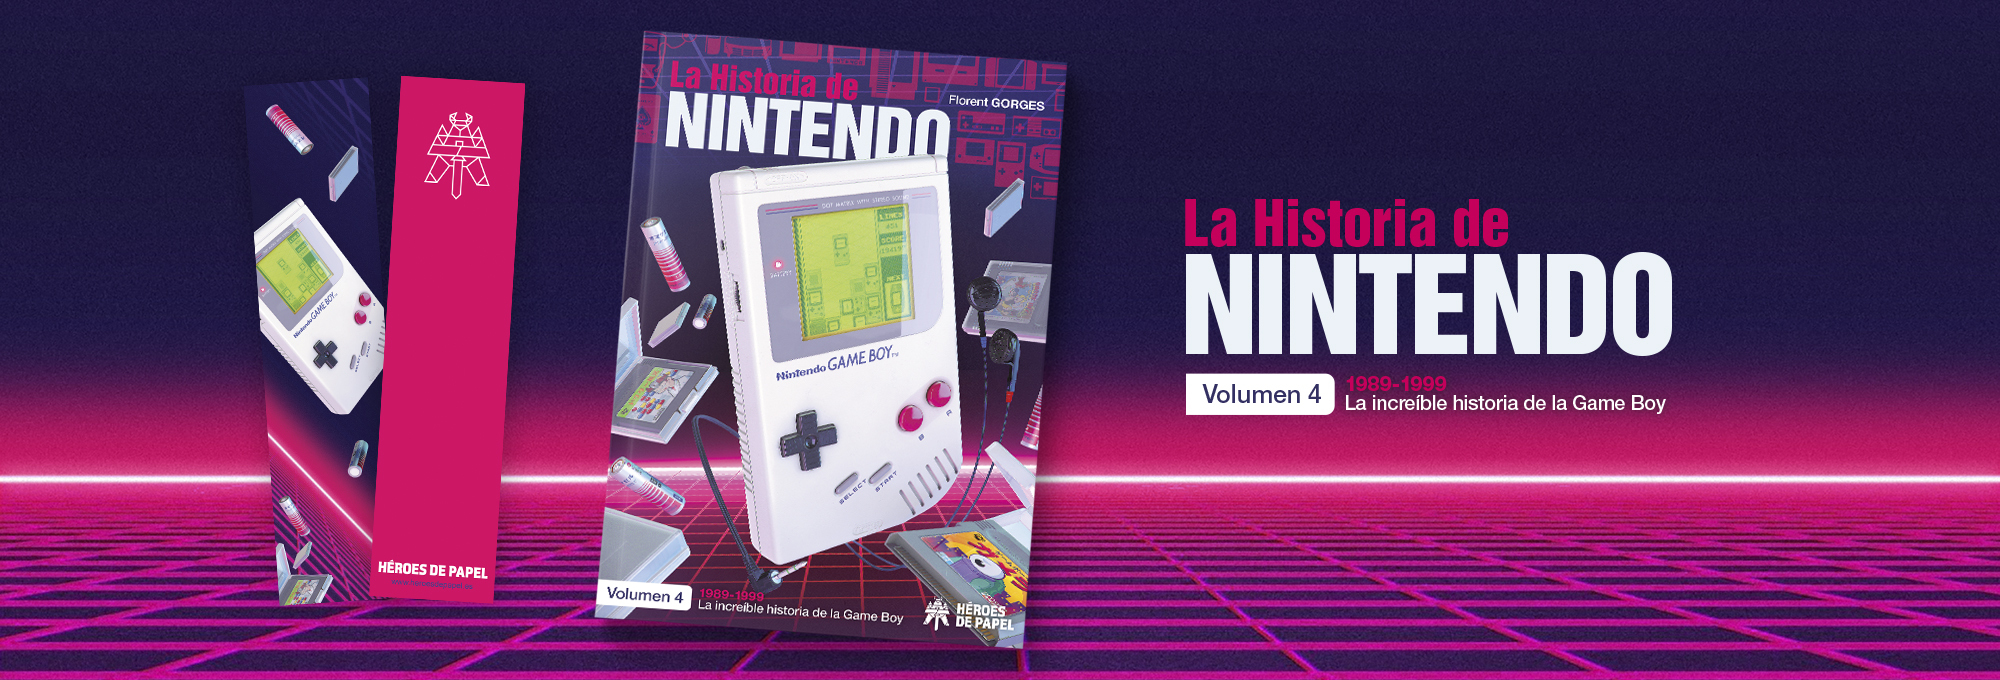 La Historia de Nintendo Vol.4 1989-1999. La increíble historia de la Game Boy